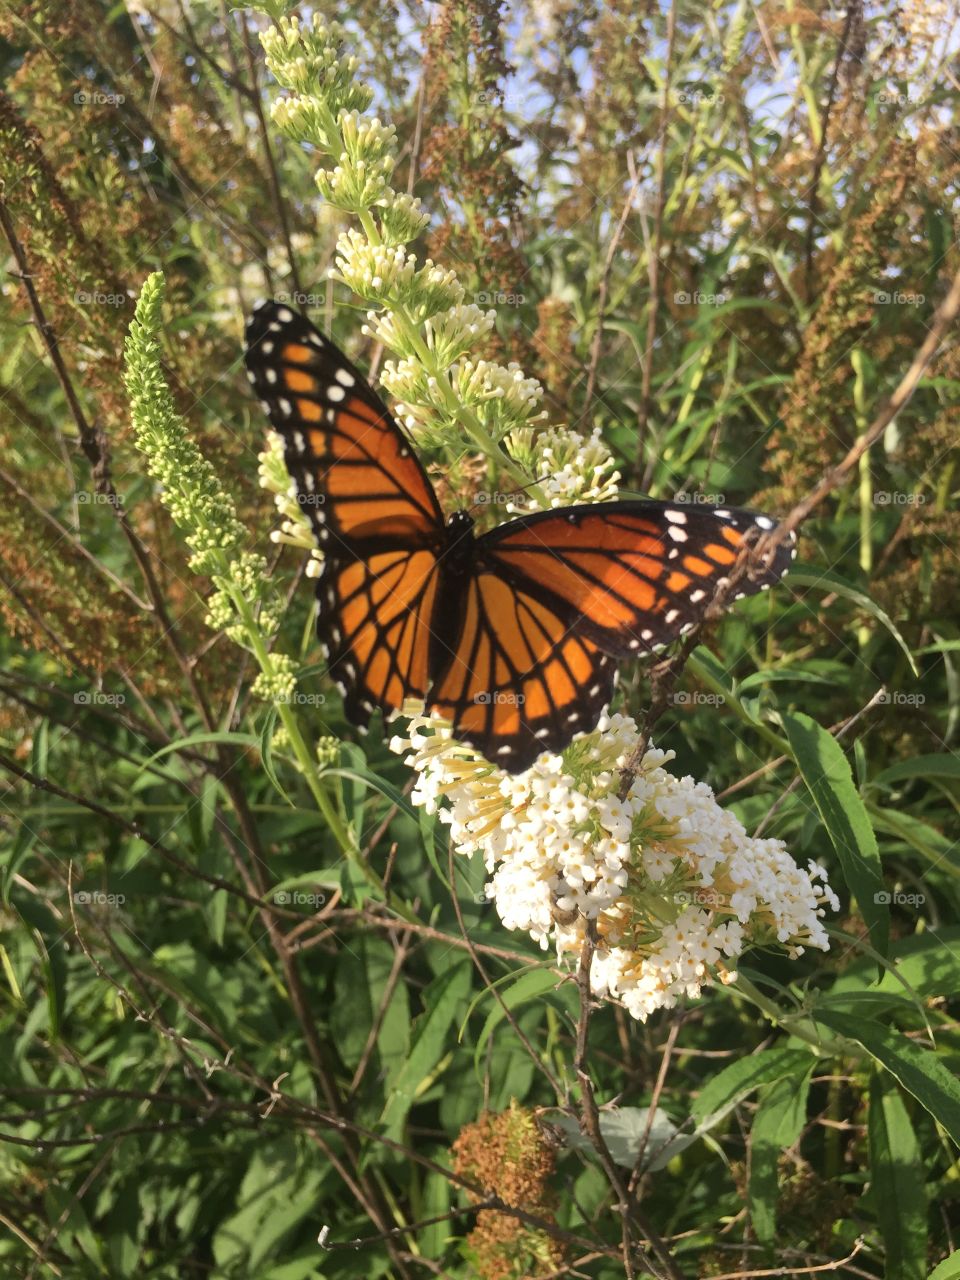  Monarch butterfly on a butterfly bush